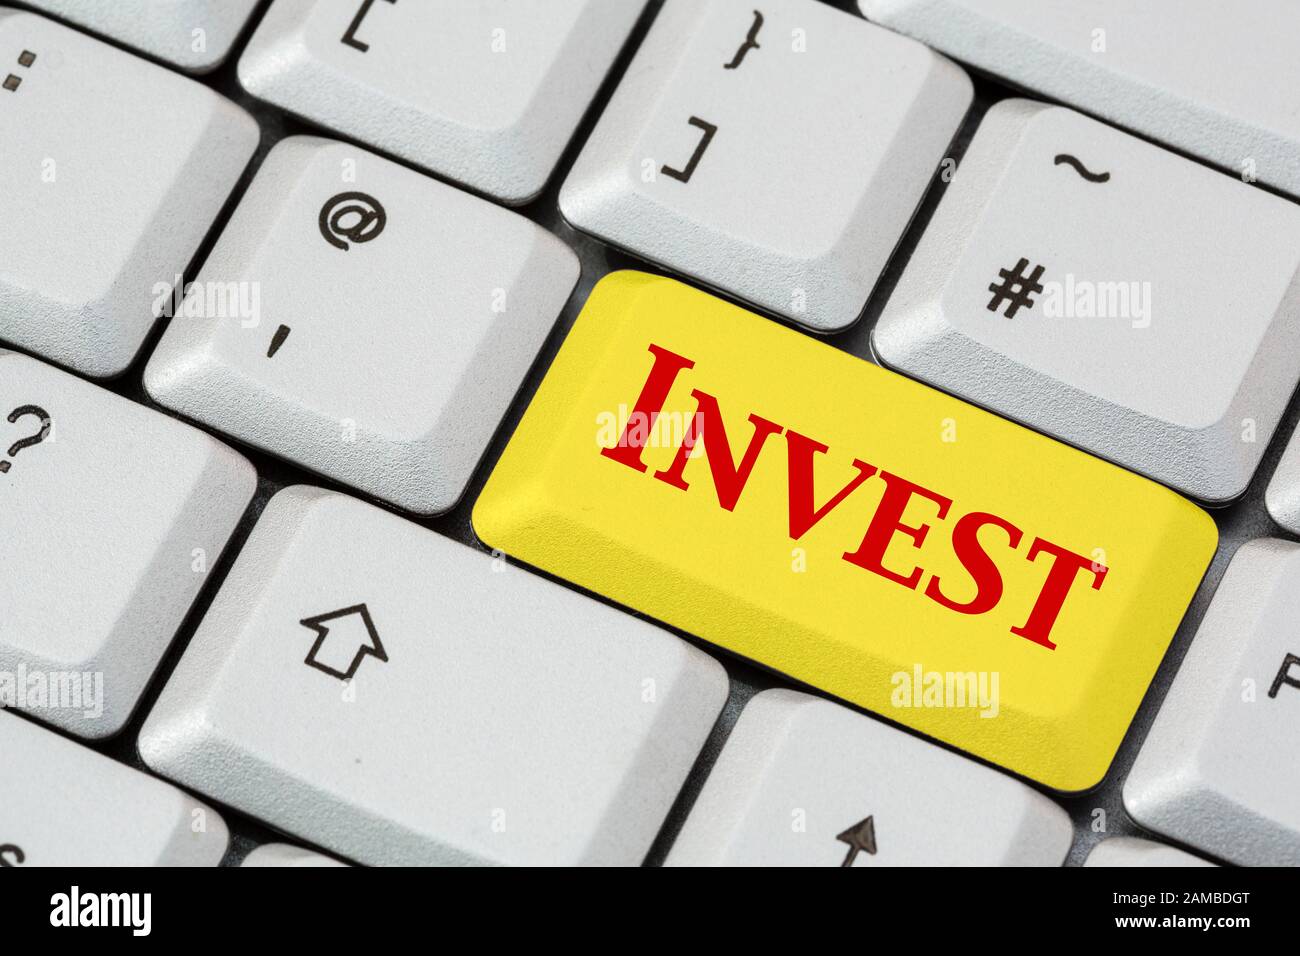 Un clavier avec Invest écrit en lettres rouges sur une touche d'entrée jaune. Concept d'investissement. Angleterre, Royaume-Uni, Grande-Bretagne Banque D'Images